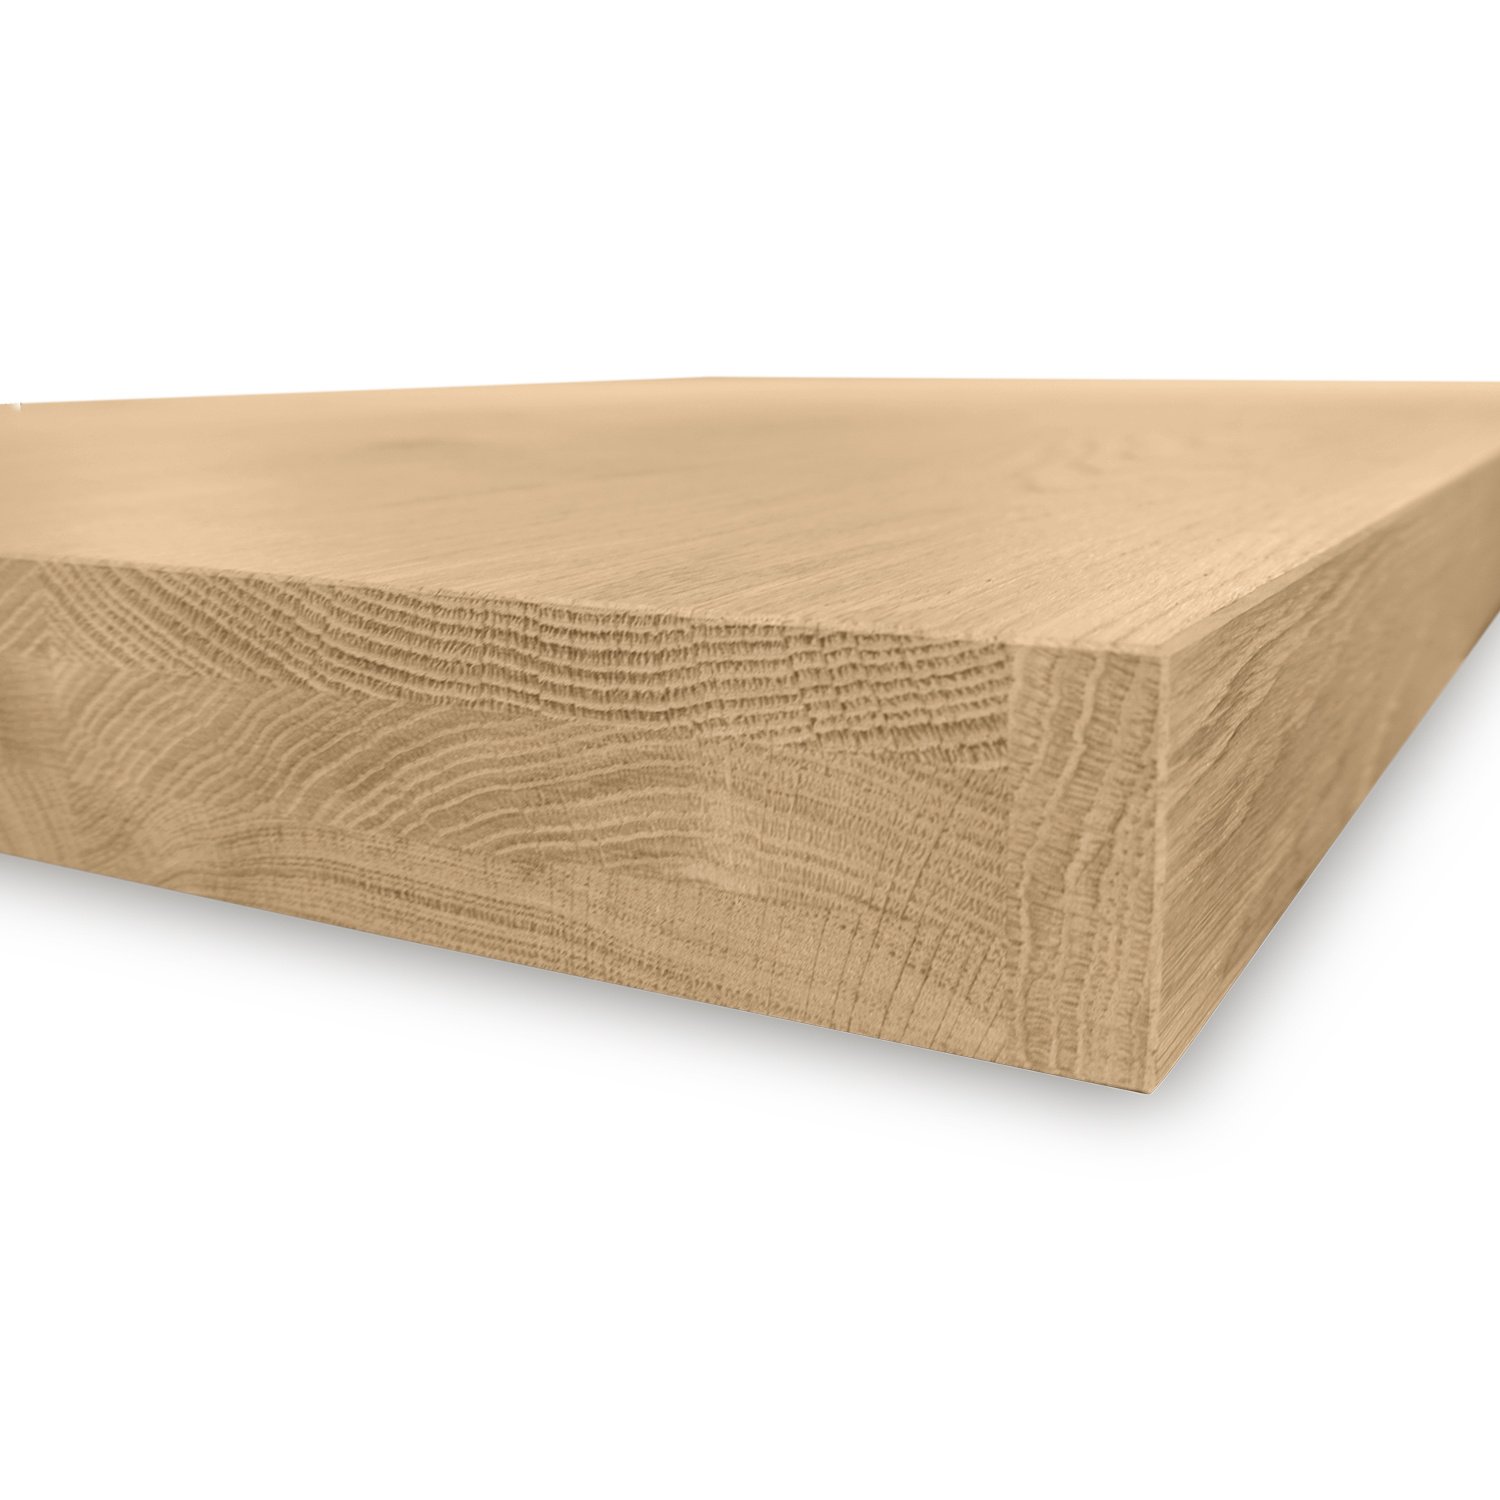  Tischplatte Eiche nach Maß - 6 cm dick (2-lagig) - Eichenholz A-Qualität - Eiche Tischplatte - verleimt & künstlich getrocknet (HF 8-12%) - 50-120x50-350 cm